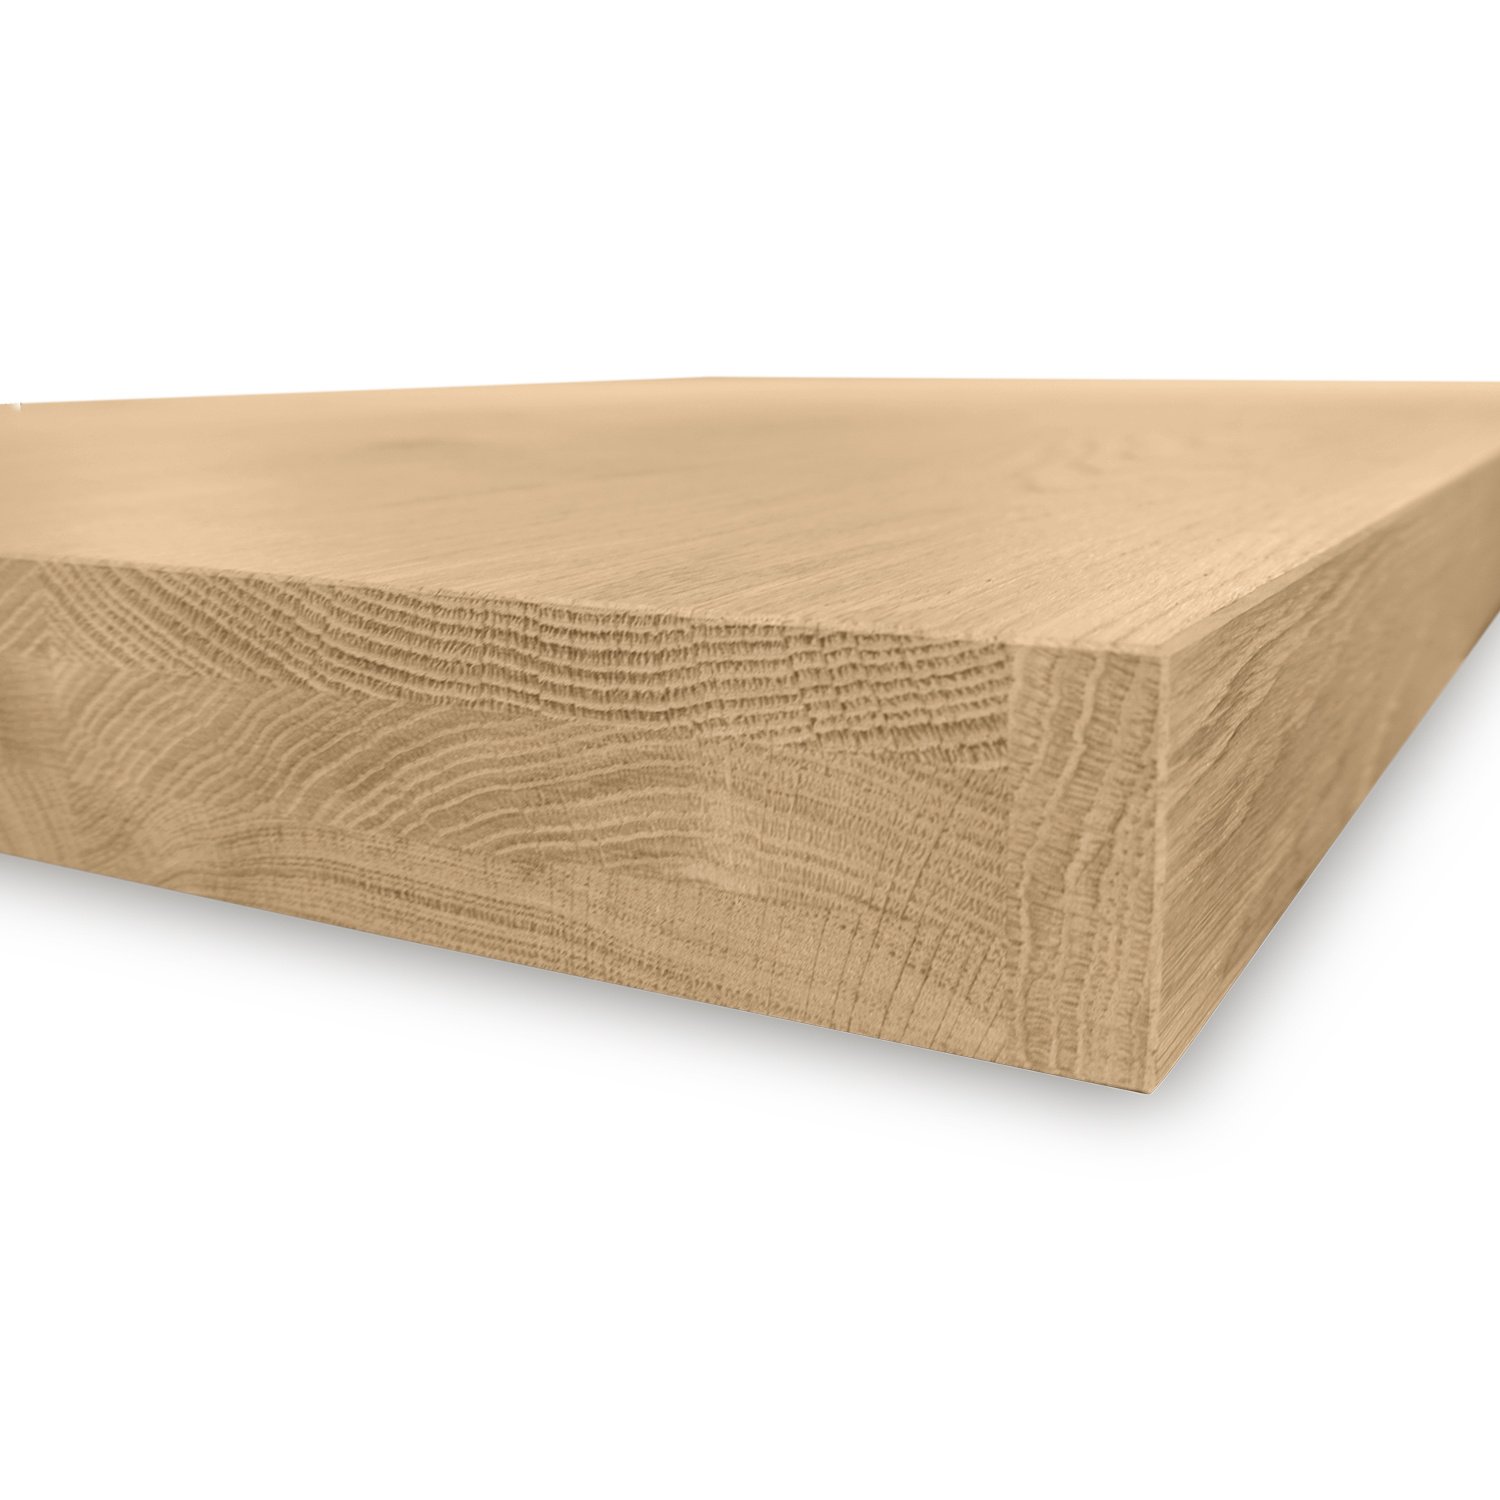  Tischplatte Eiche nach Maß - 6 cm dick (2-lagig) - Eichenholz A-Qualität - Eiche Tischplatte - verleimt & künstlich getrocknet (HF 8-12%) - 50-120x50-350 cm